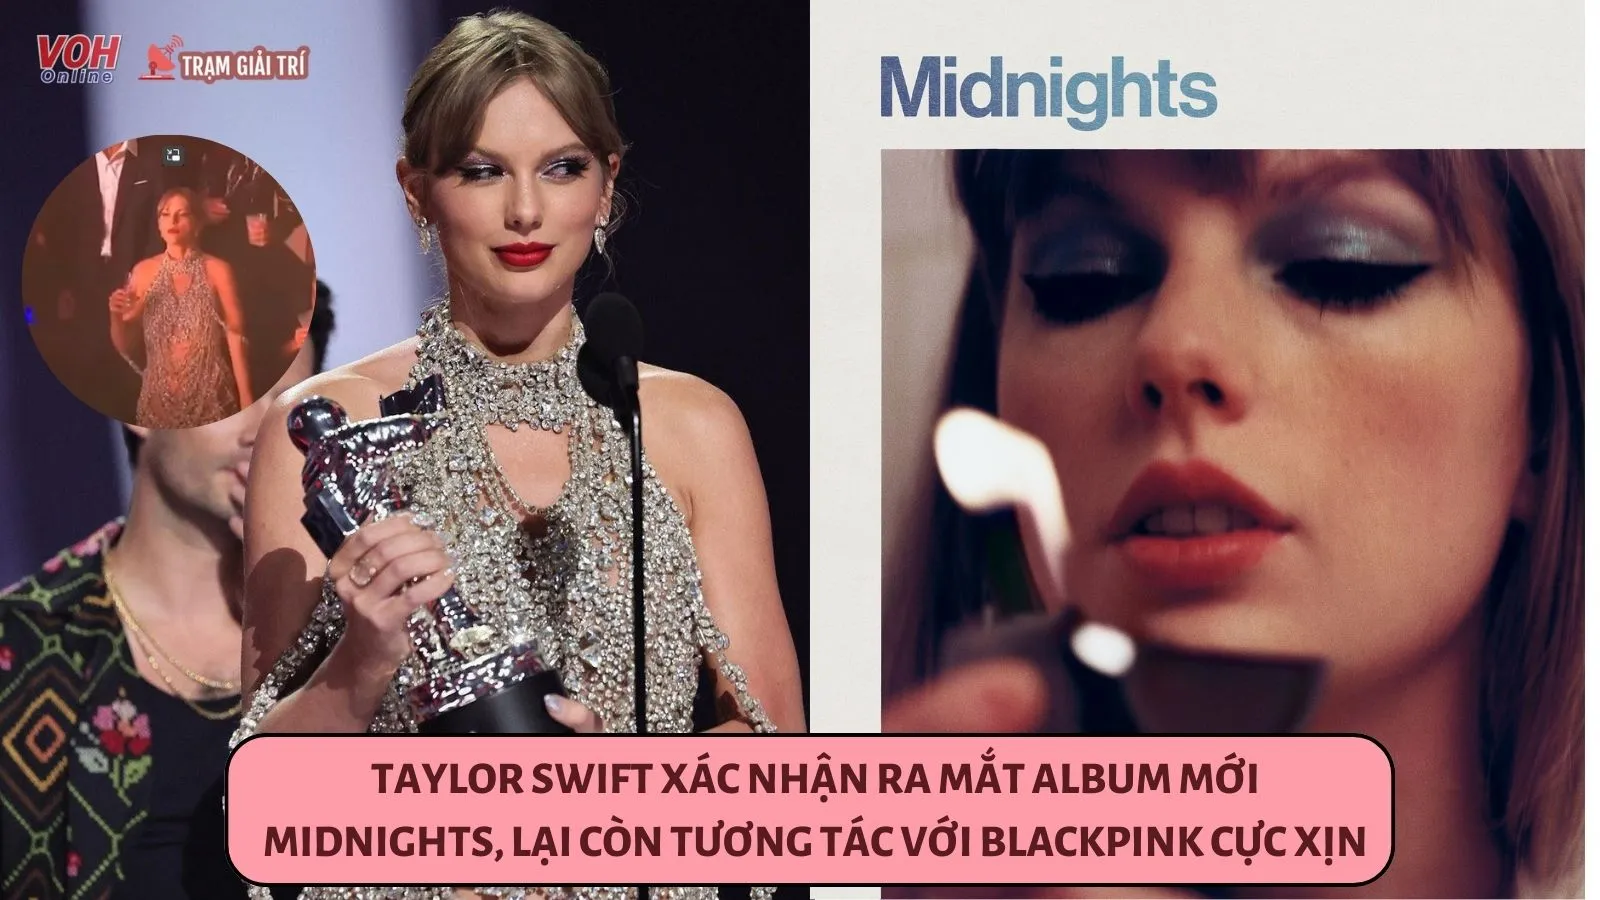 Taylor Swift xác nhận ra mắt album mới Midnights sau chiến thắng tại MTV VMAs 2022